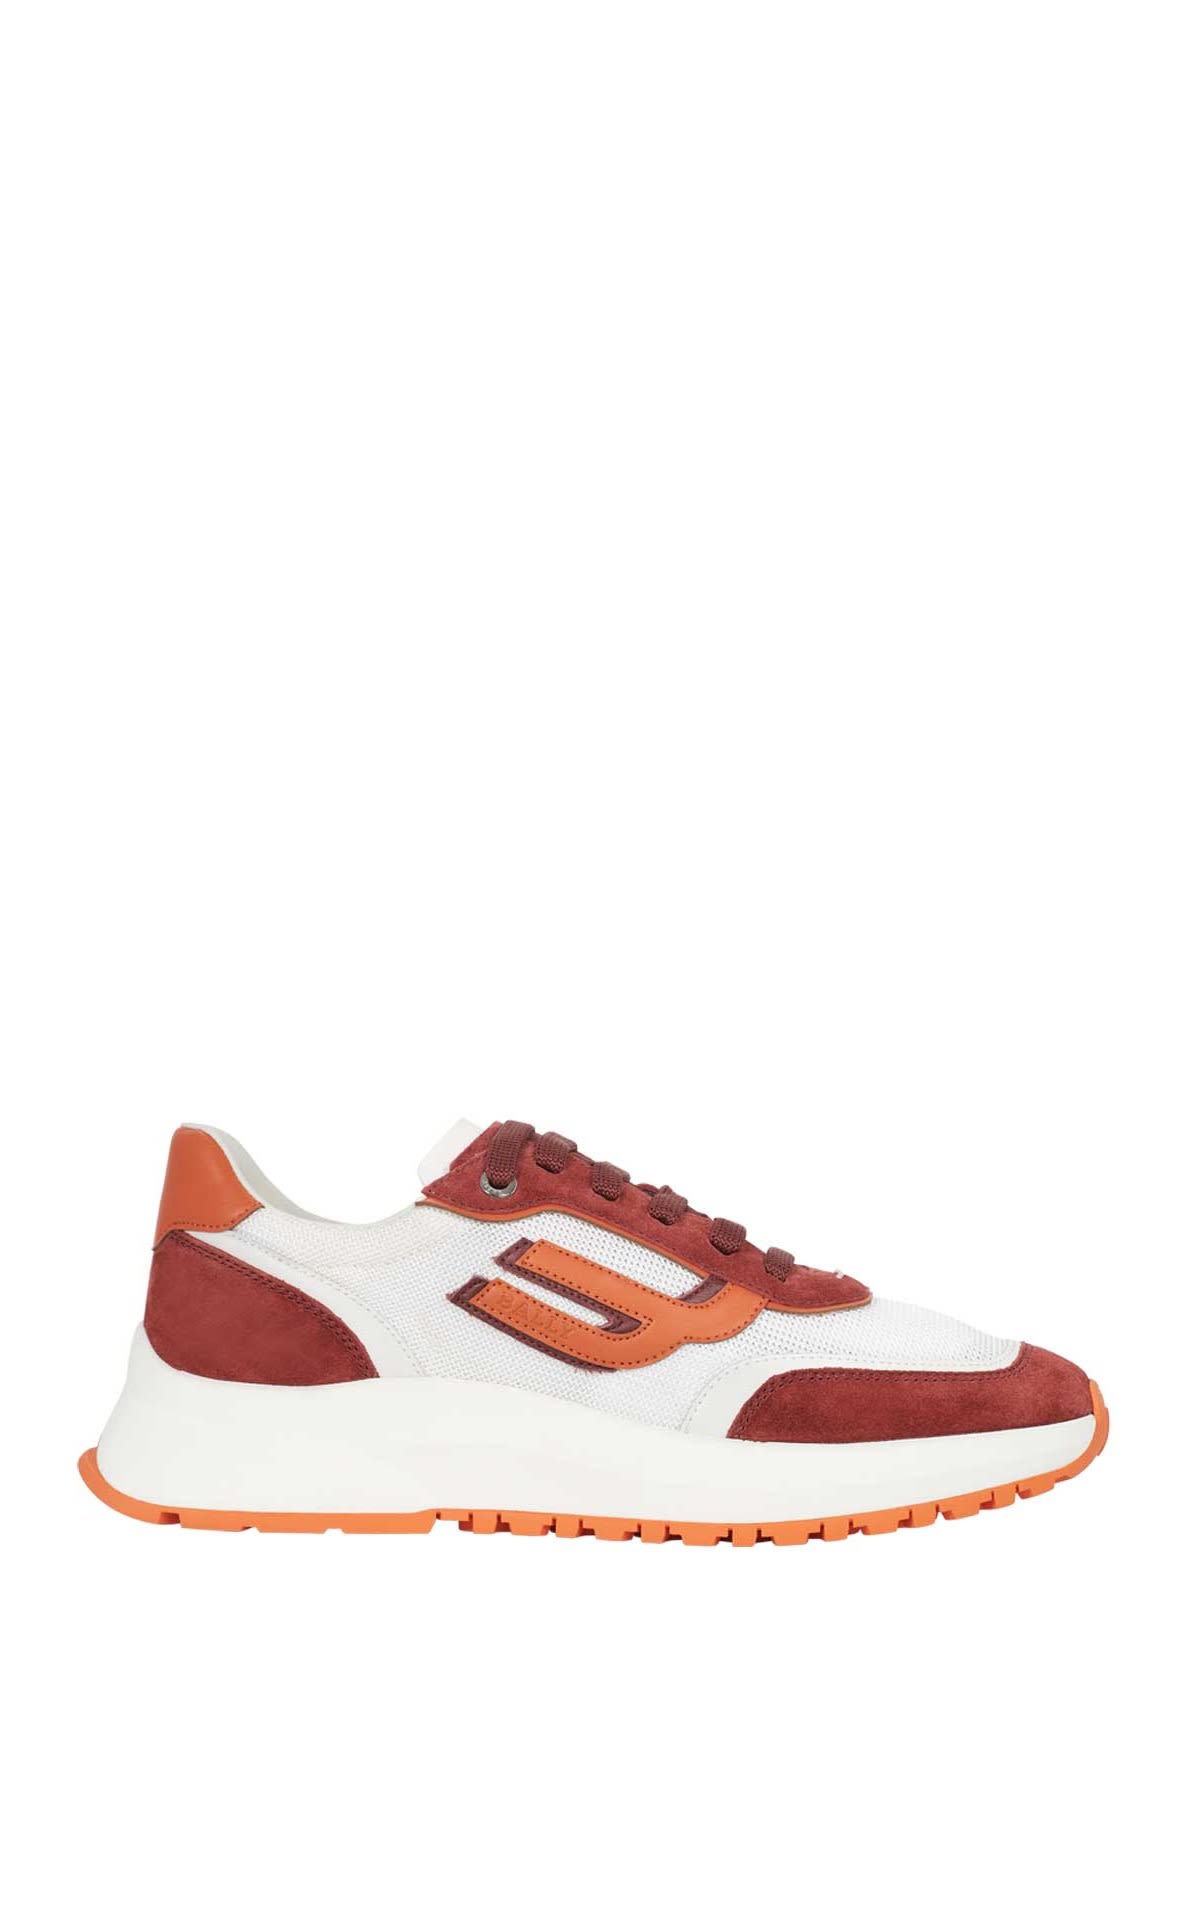 Sneaker blanca con detalles rojos y naranjas Bally